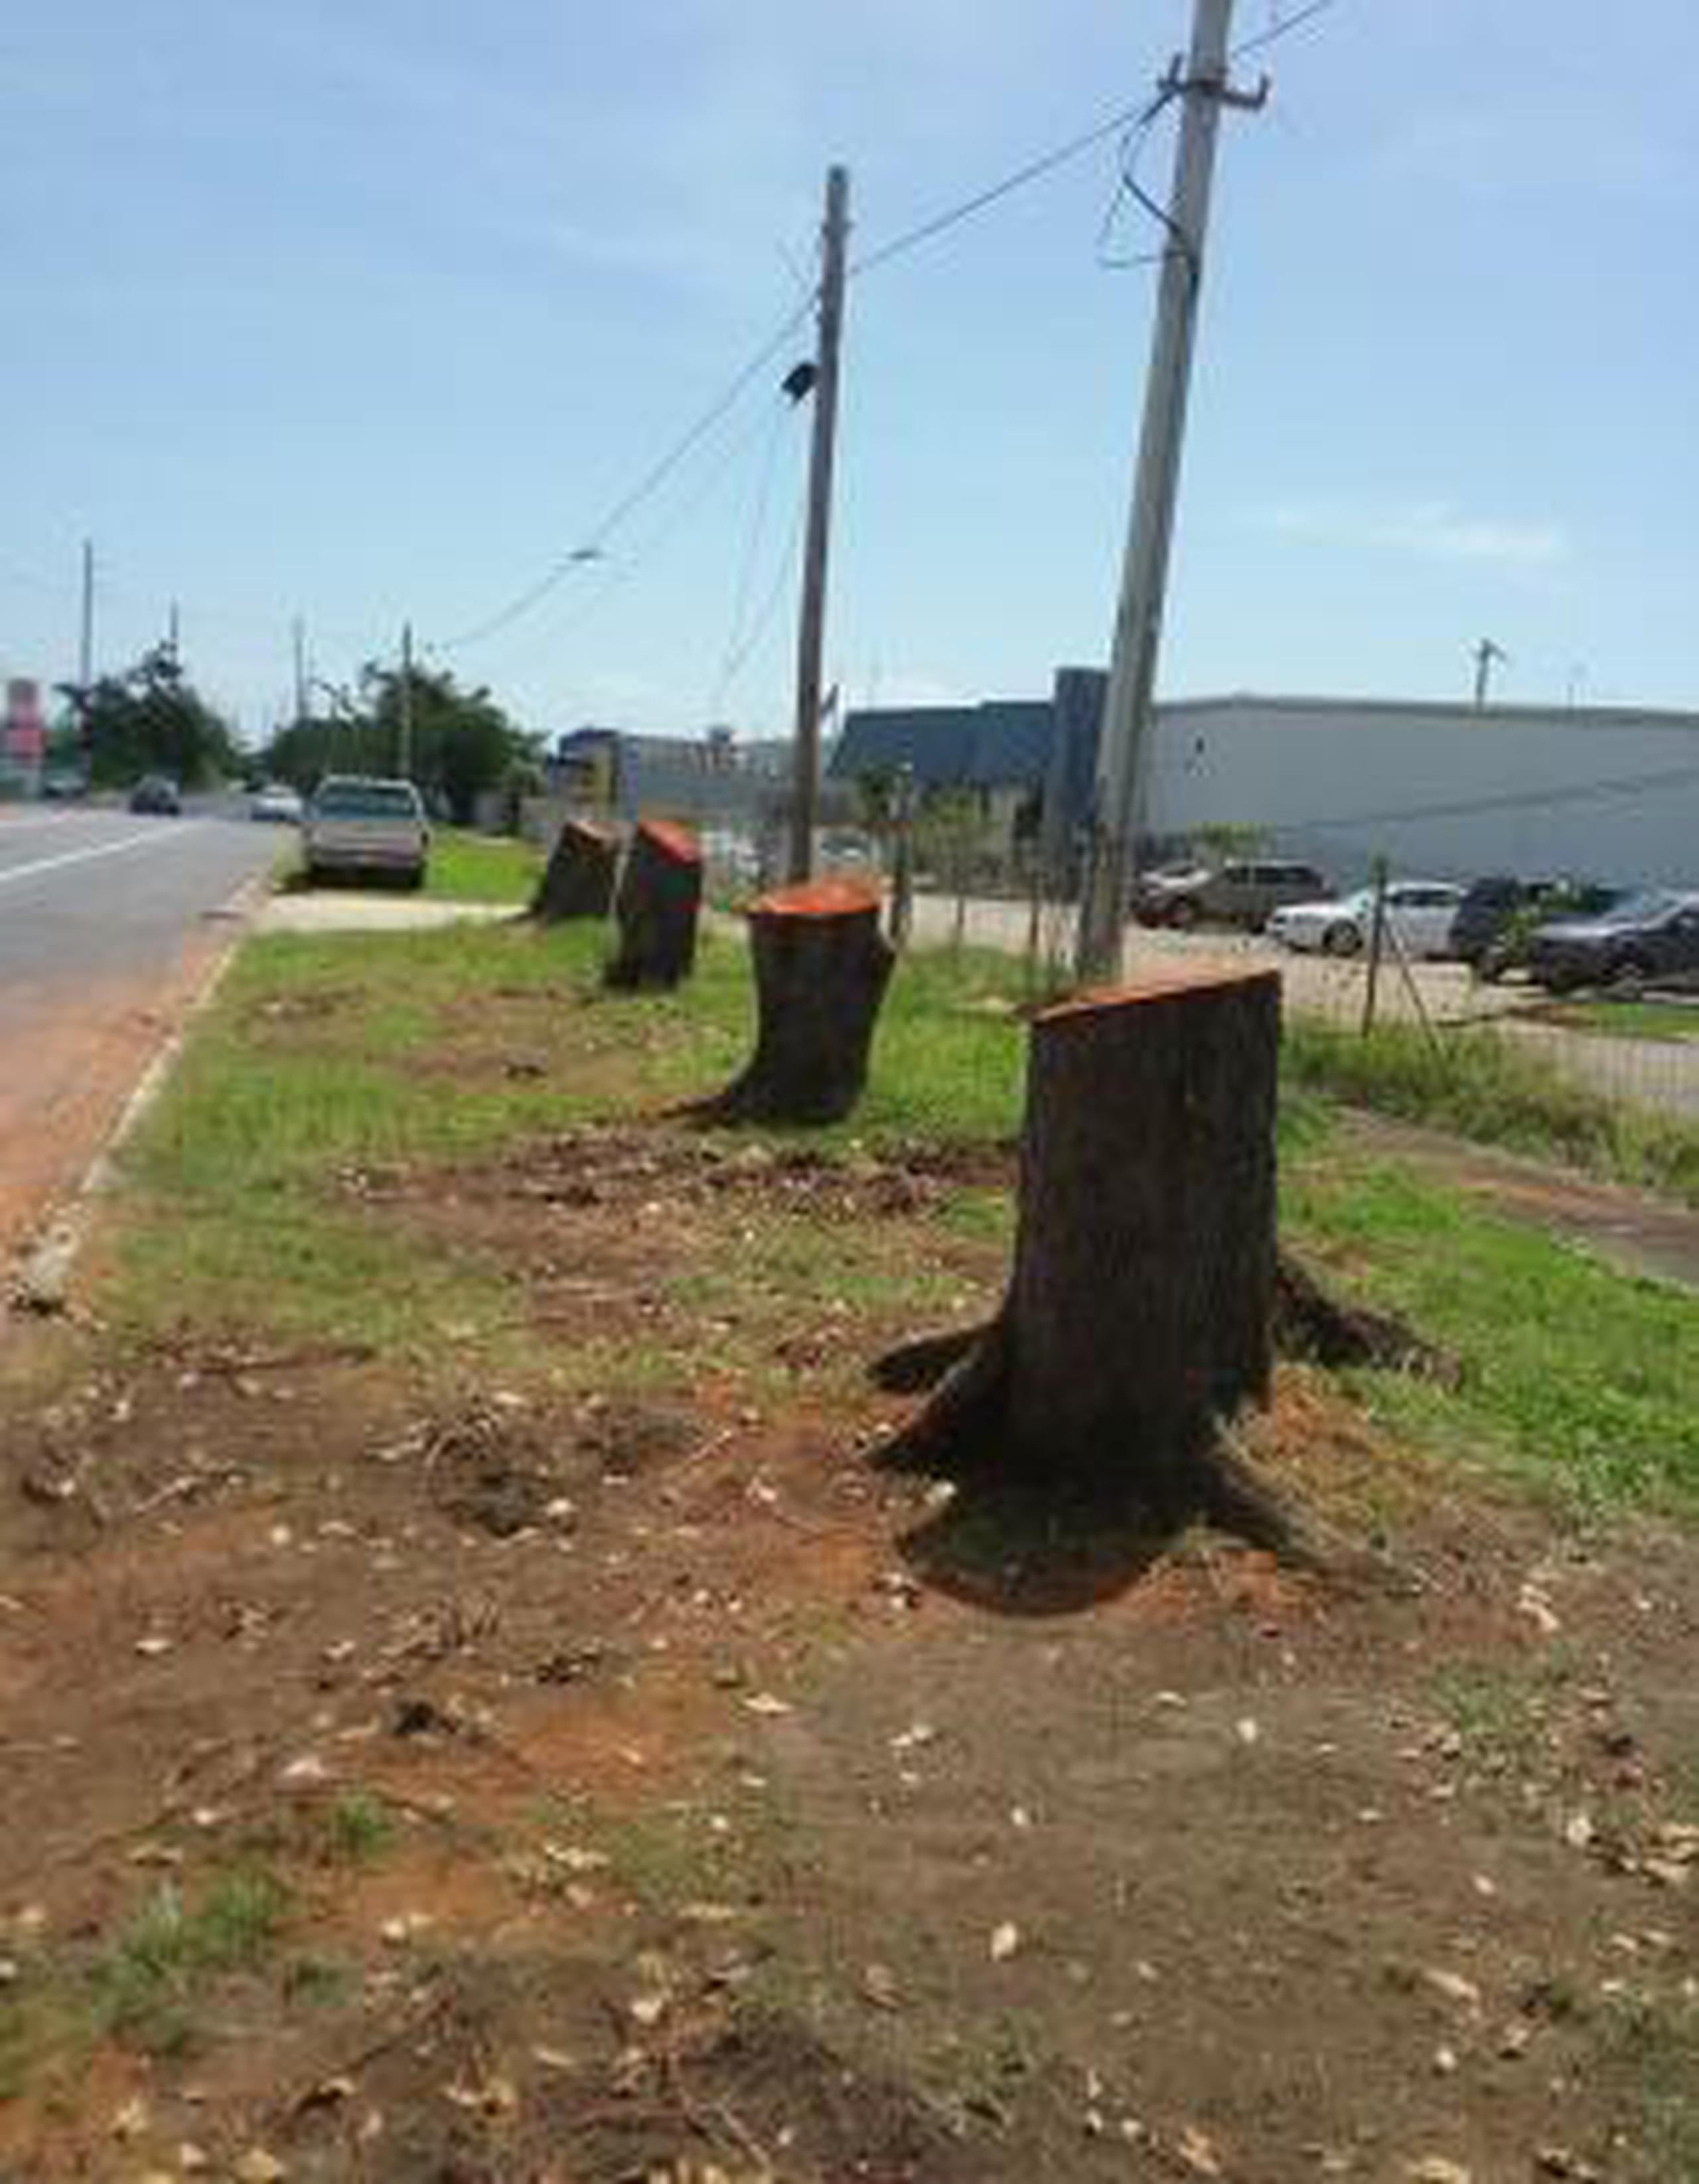 El corte de los árboles, alegadamente, responde a la construcción de encintado. (Captura Facebook)